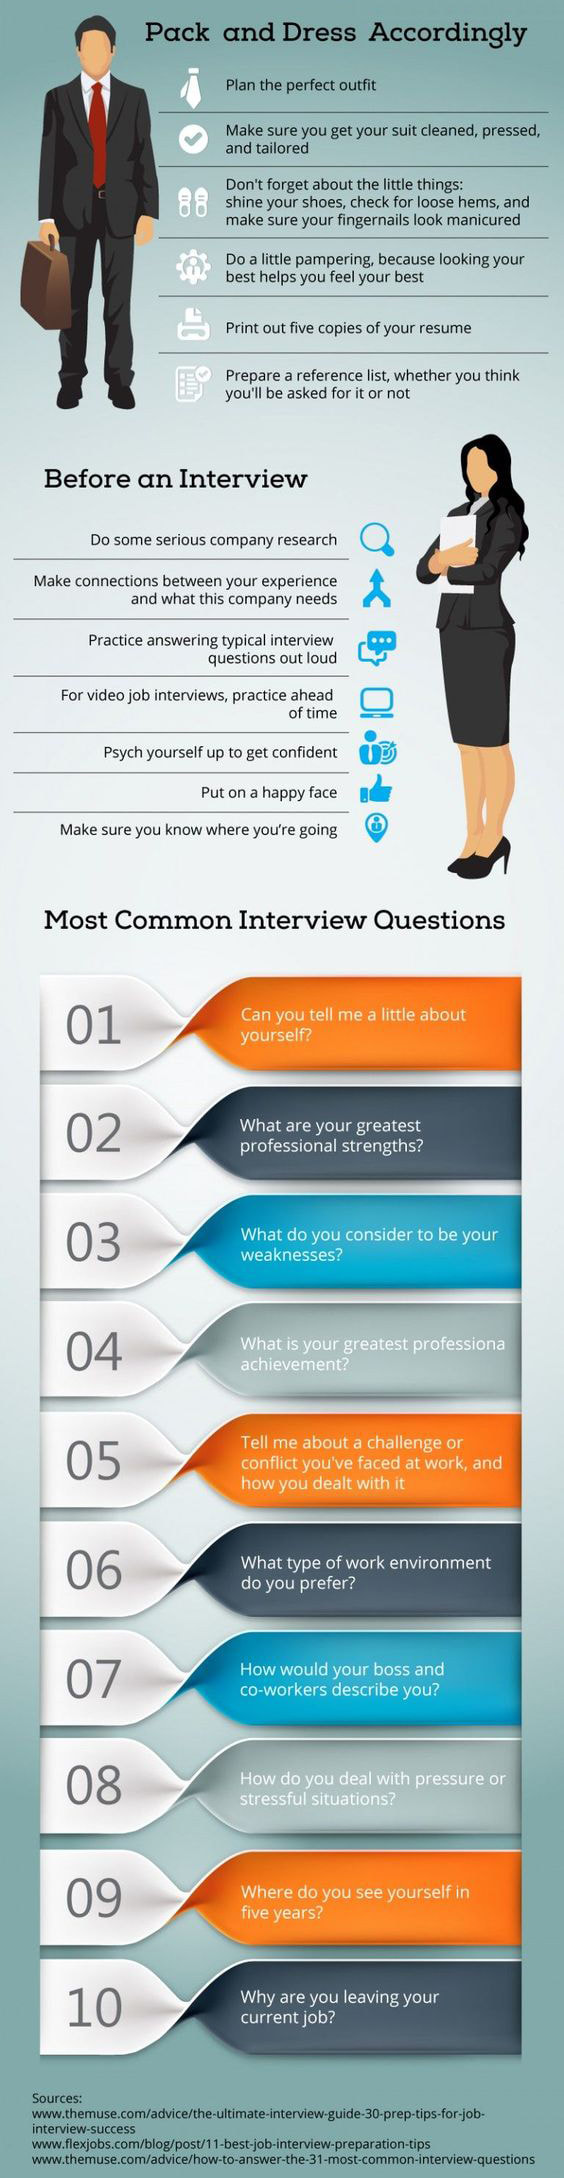 Best Interview Preparation Tips